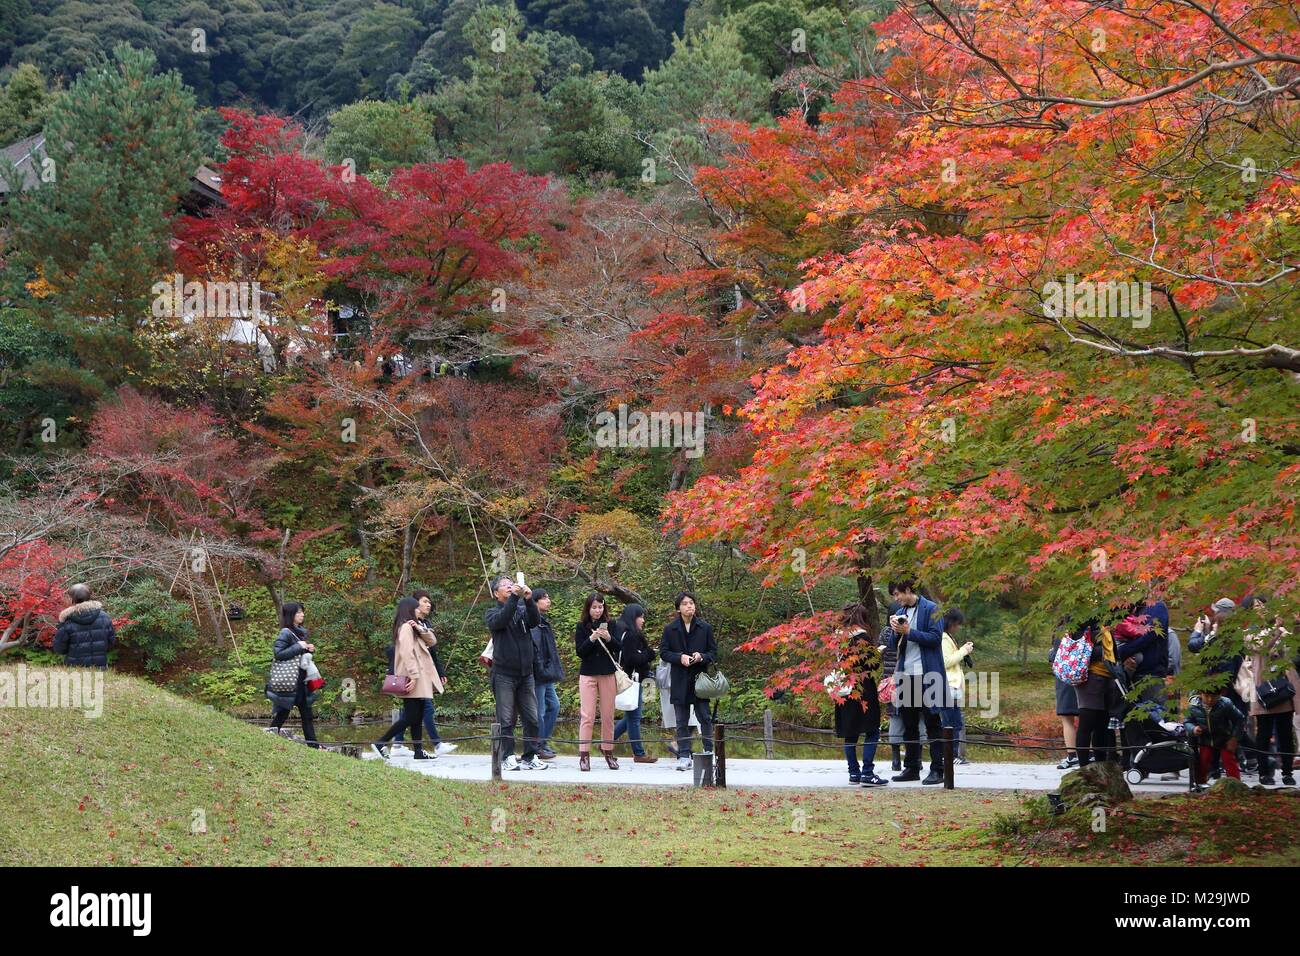 KYOTO, Giappone - 26 novembre 2016: la gente visita tempio Kodaiji giardini in Kyoto, Giappone. 19,7 milioni di turisti stranieri hanno visitato il Giappone nel 2015. Foto Stock